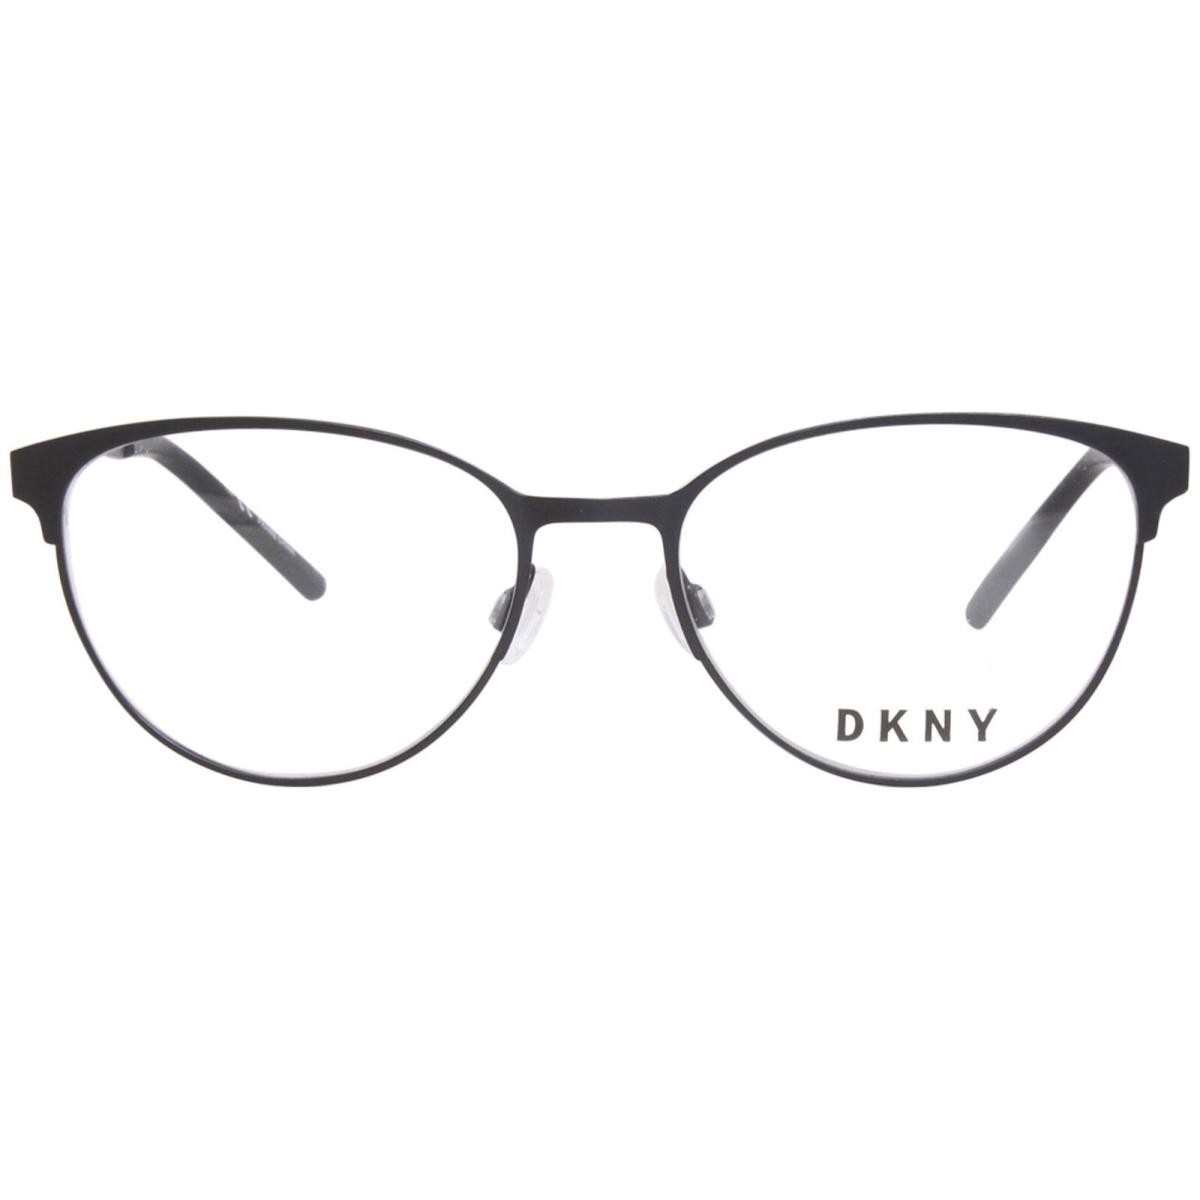 Dkny DK1030 001 Eyeglasses Frame Women`s Black Full Rim Round Shape 52mm